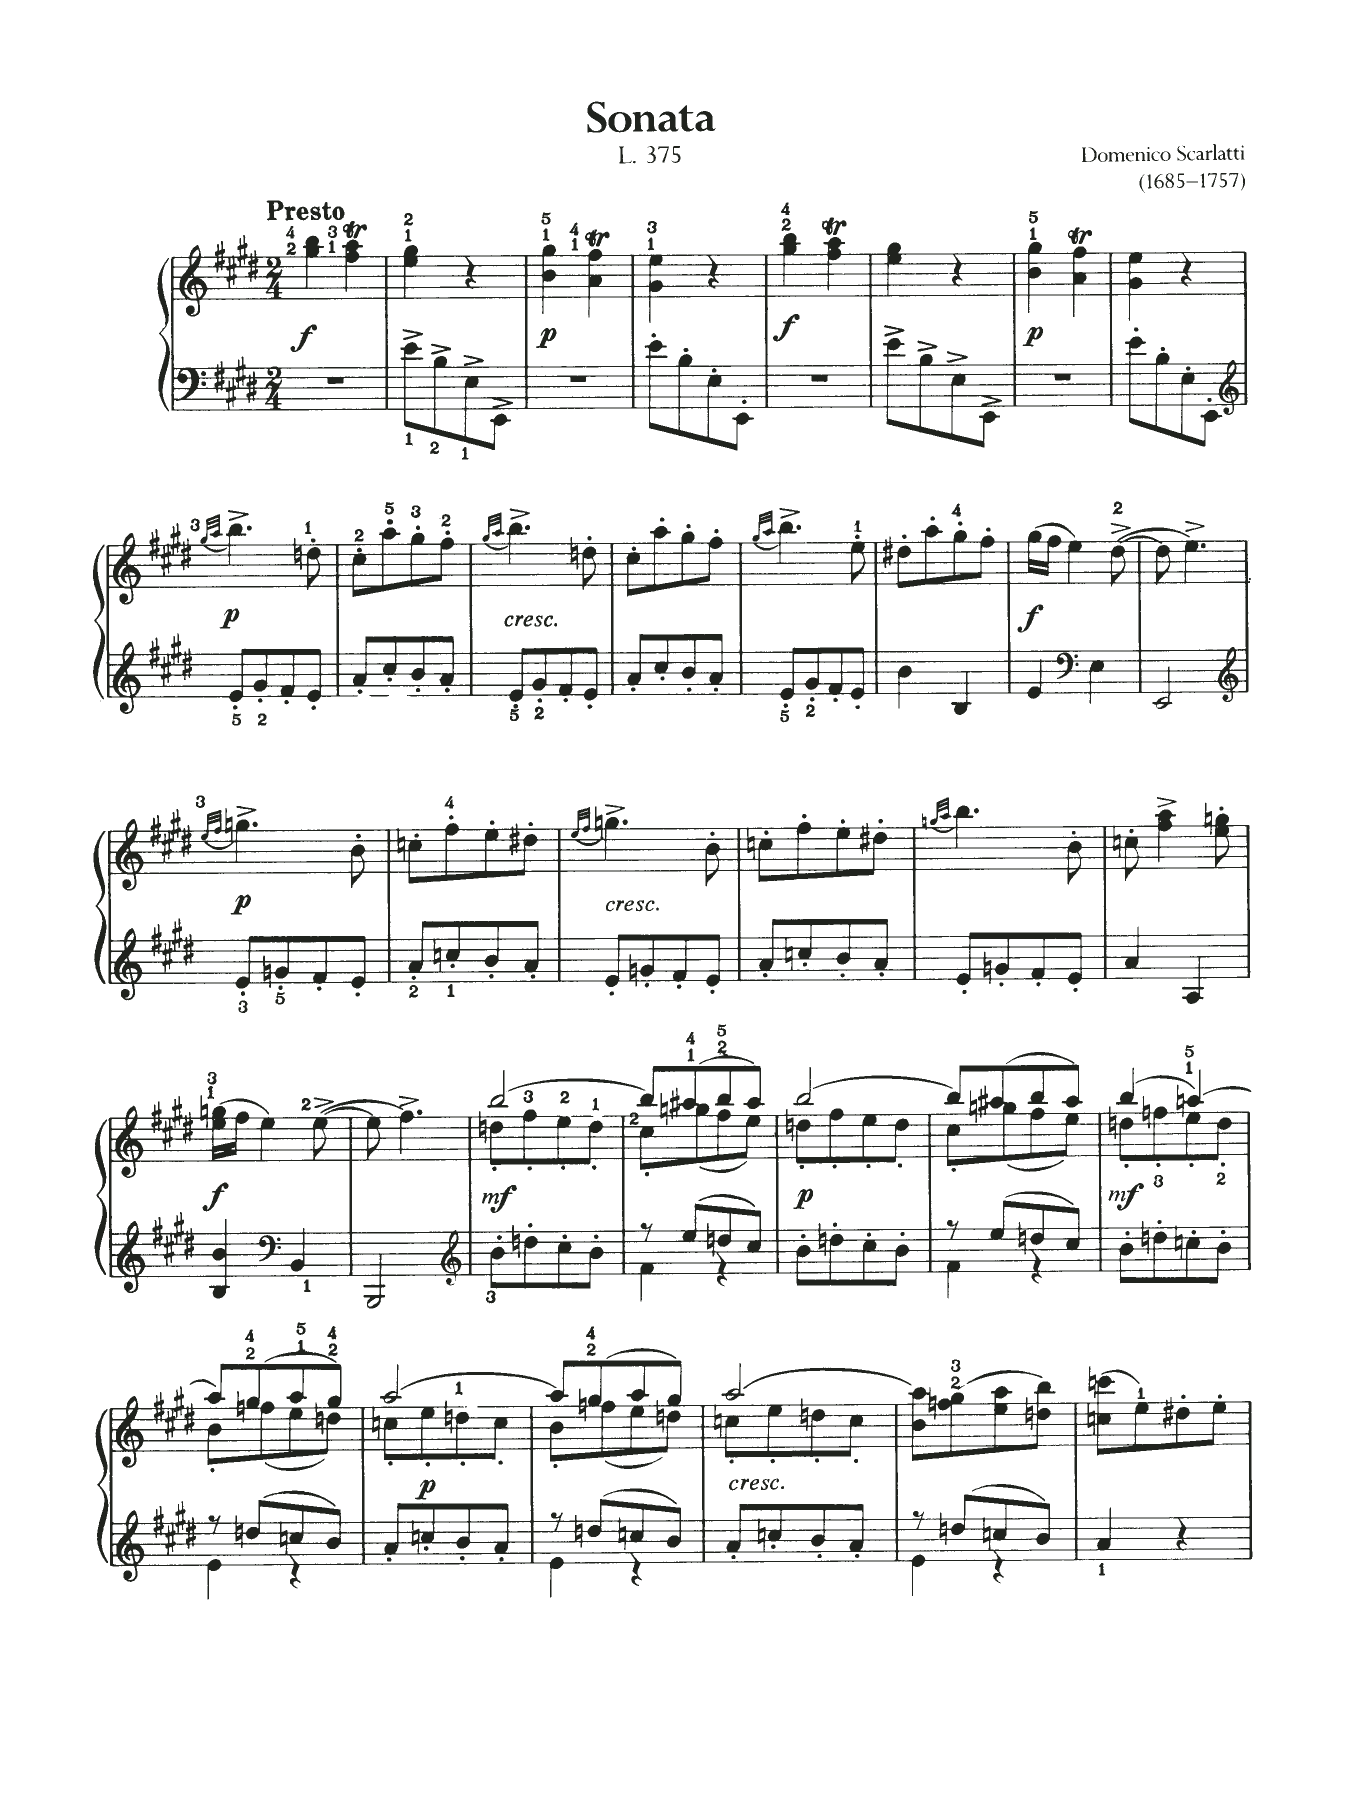 Domenico Scarlatti Sonata, L. 375 Sheet Music Notes & Chords for Piano - Download or Print PDF